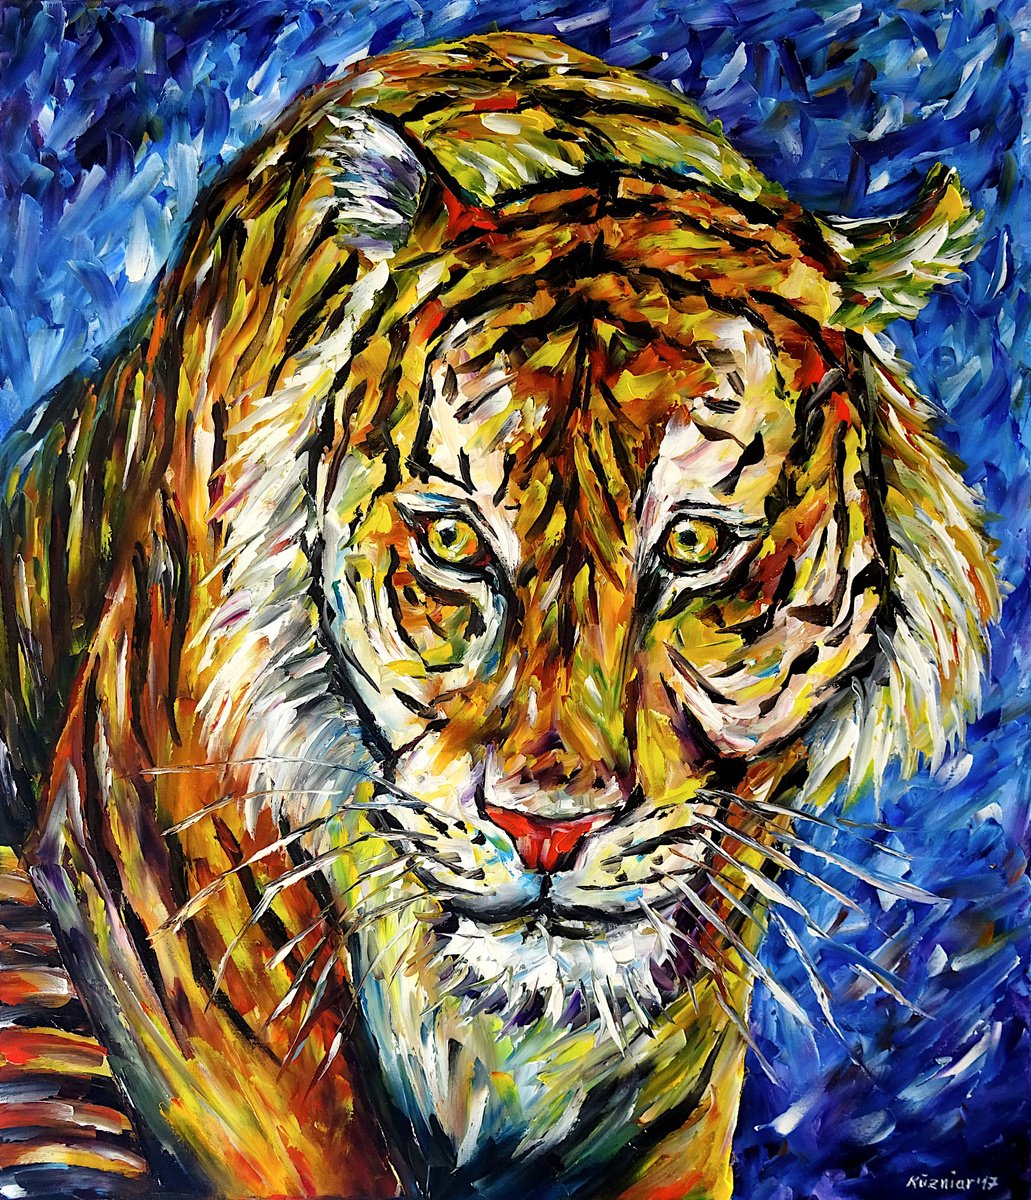 Sumatra Tiger by Mirek Kuzniar